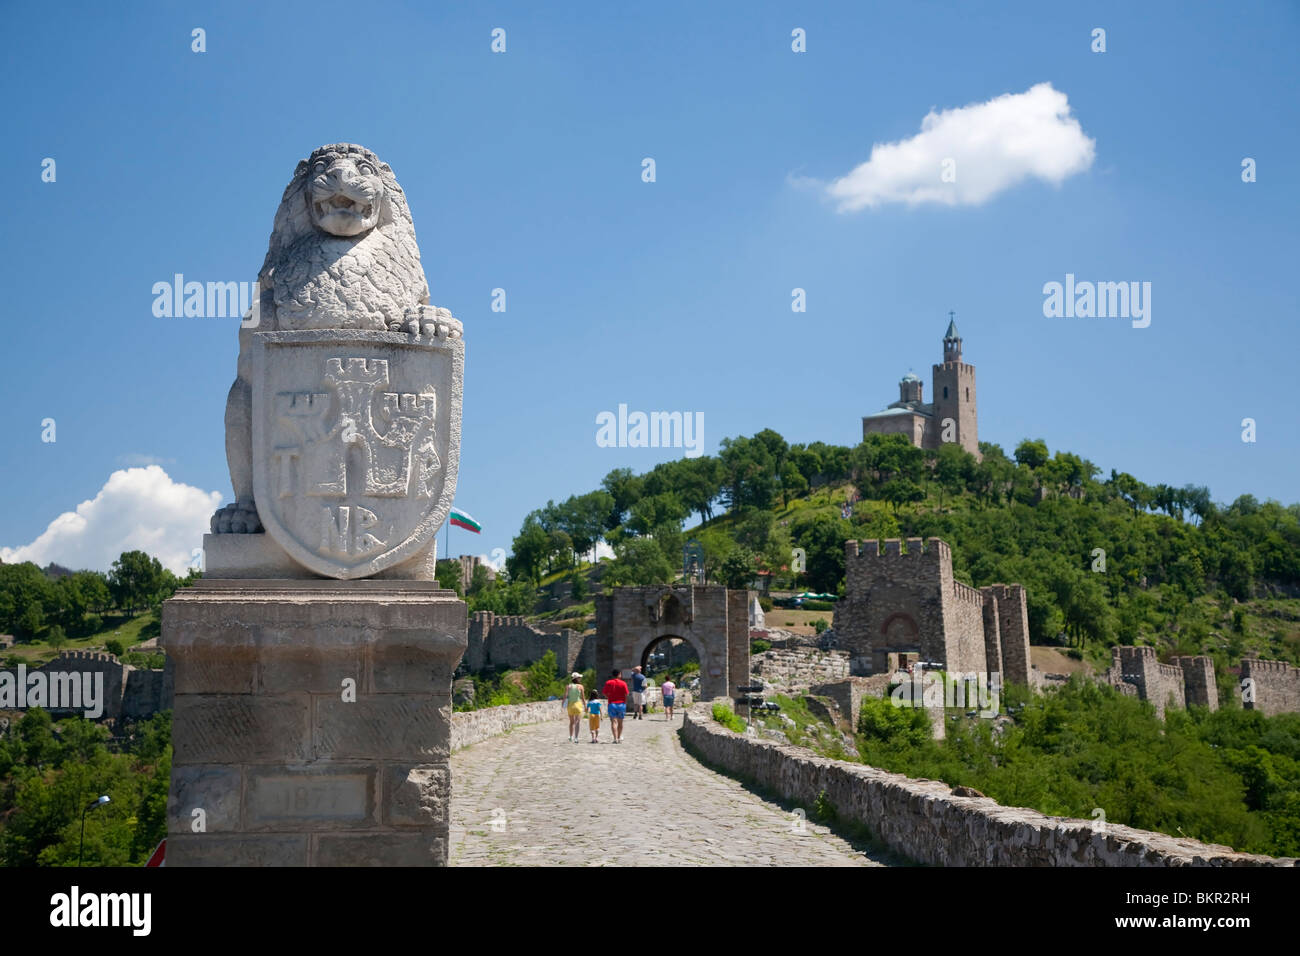 La Bulgarie, Sofia. Une statue d'un lion garde le chemin de la le château de tsarevets. Banque D'Images